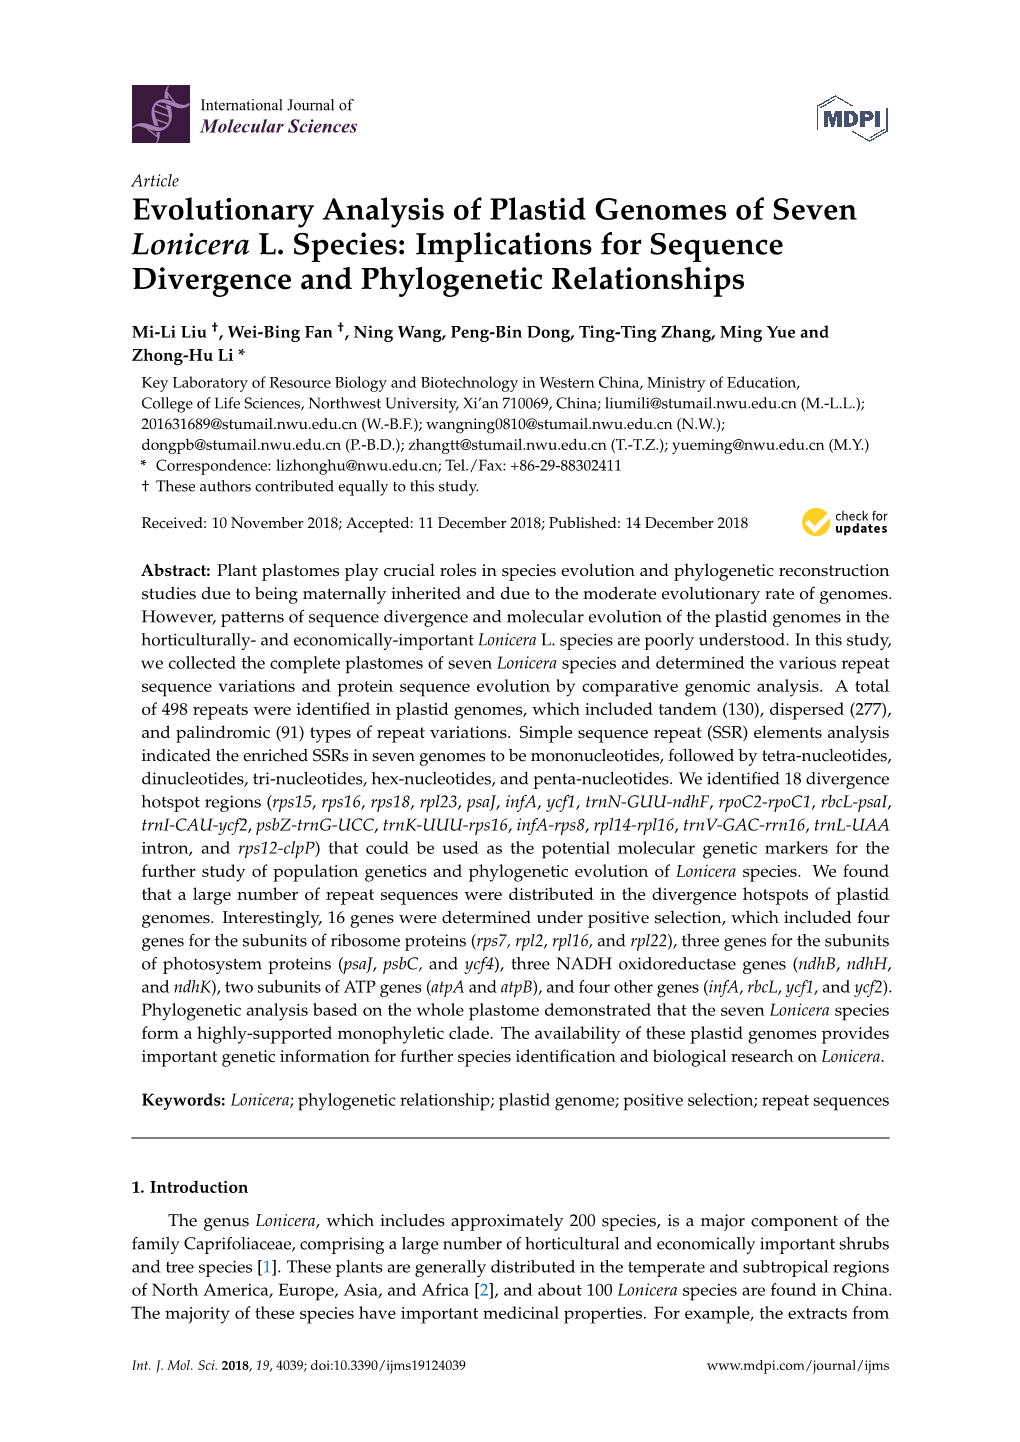 Evolutionary Analysis of Plastid Genomes of Seven Lonicera L